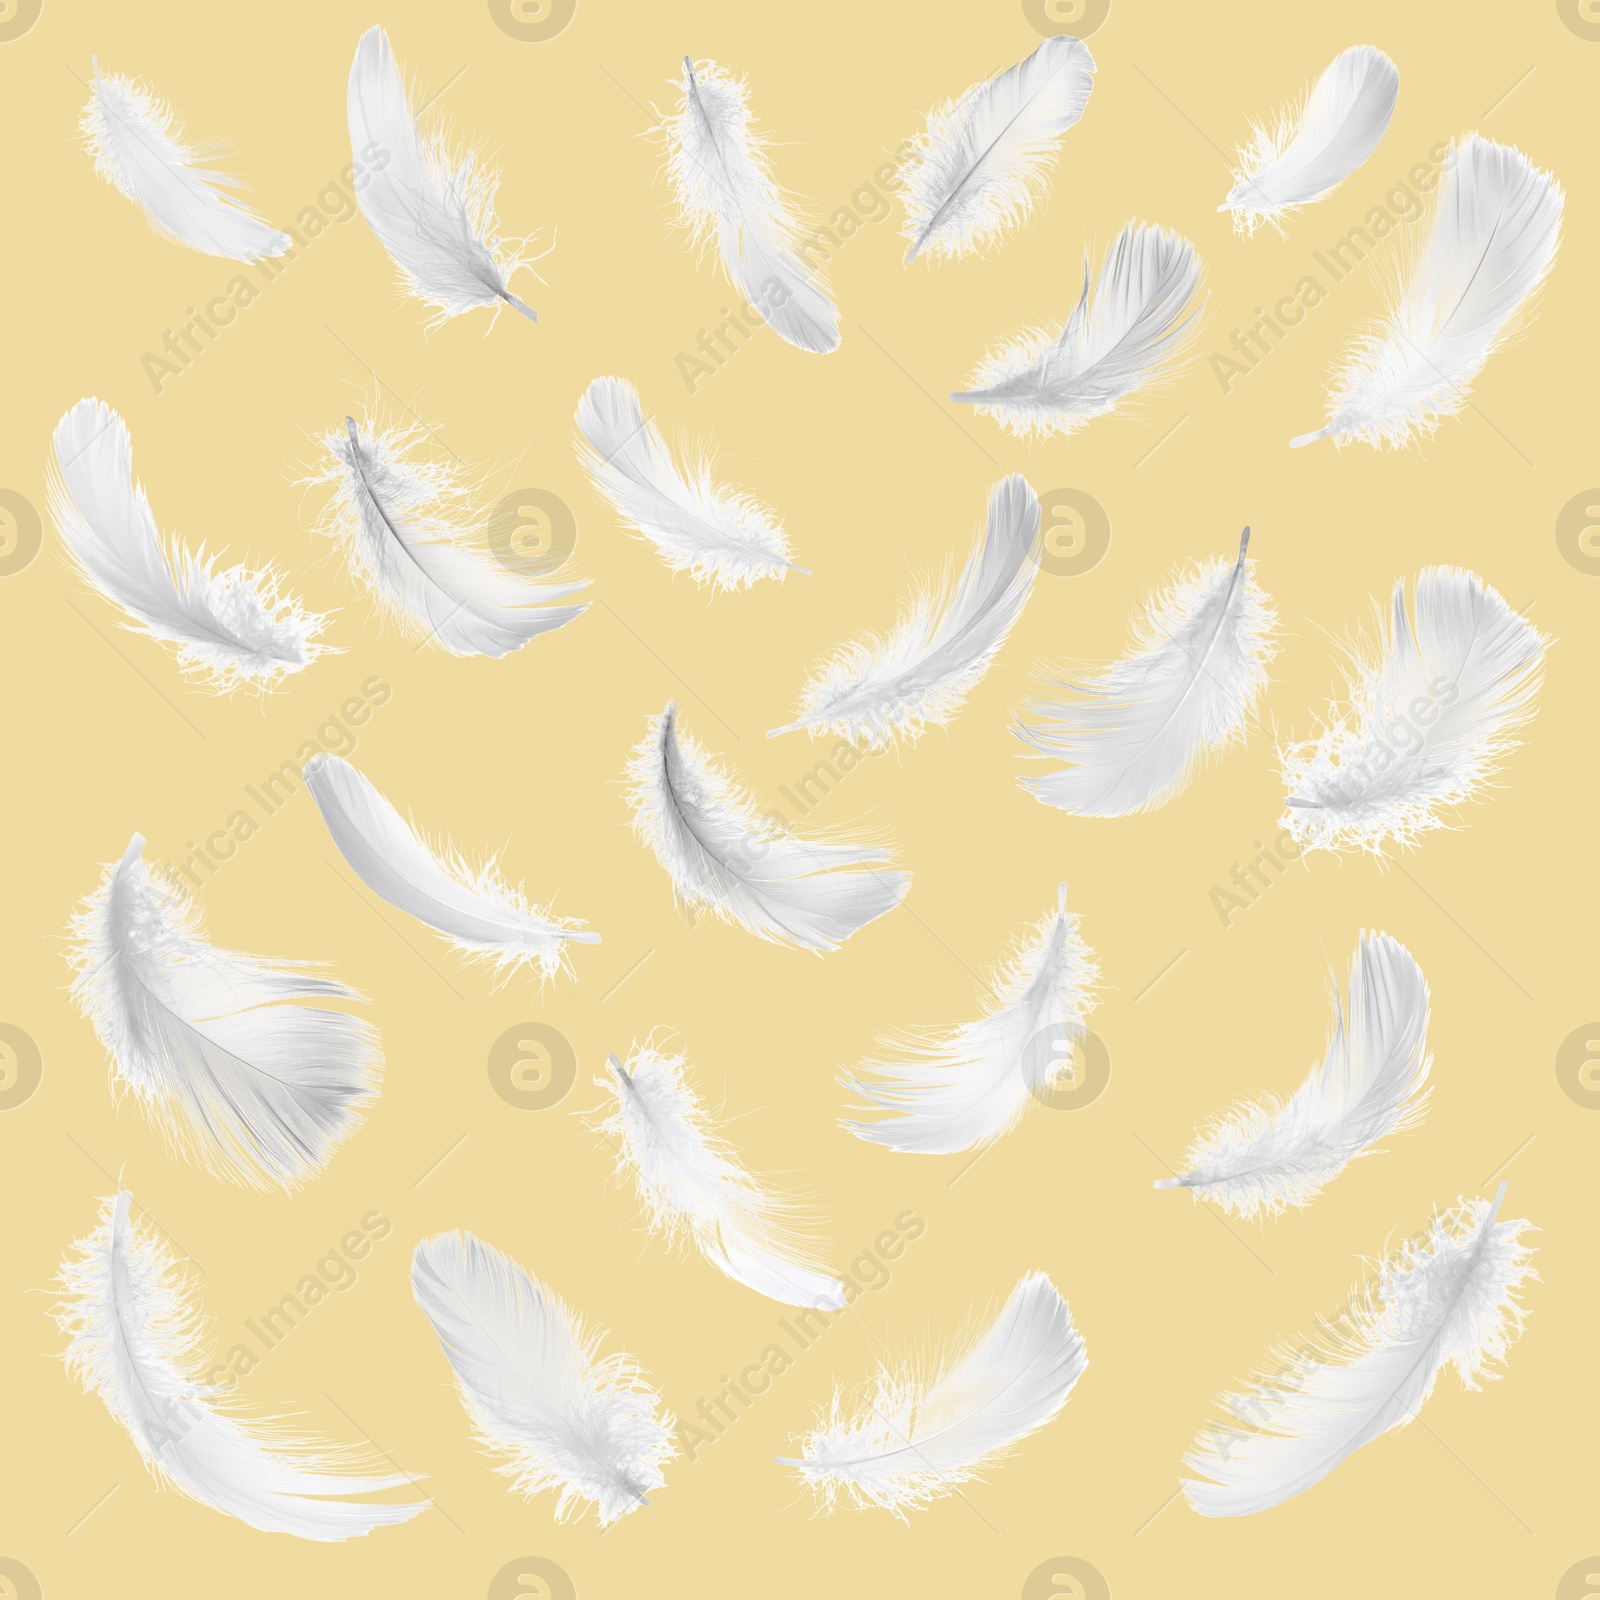 Image of Fluffy bird feathers on pale orange background